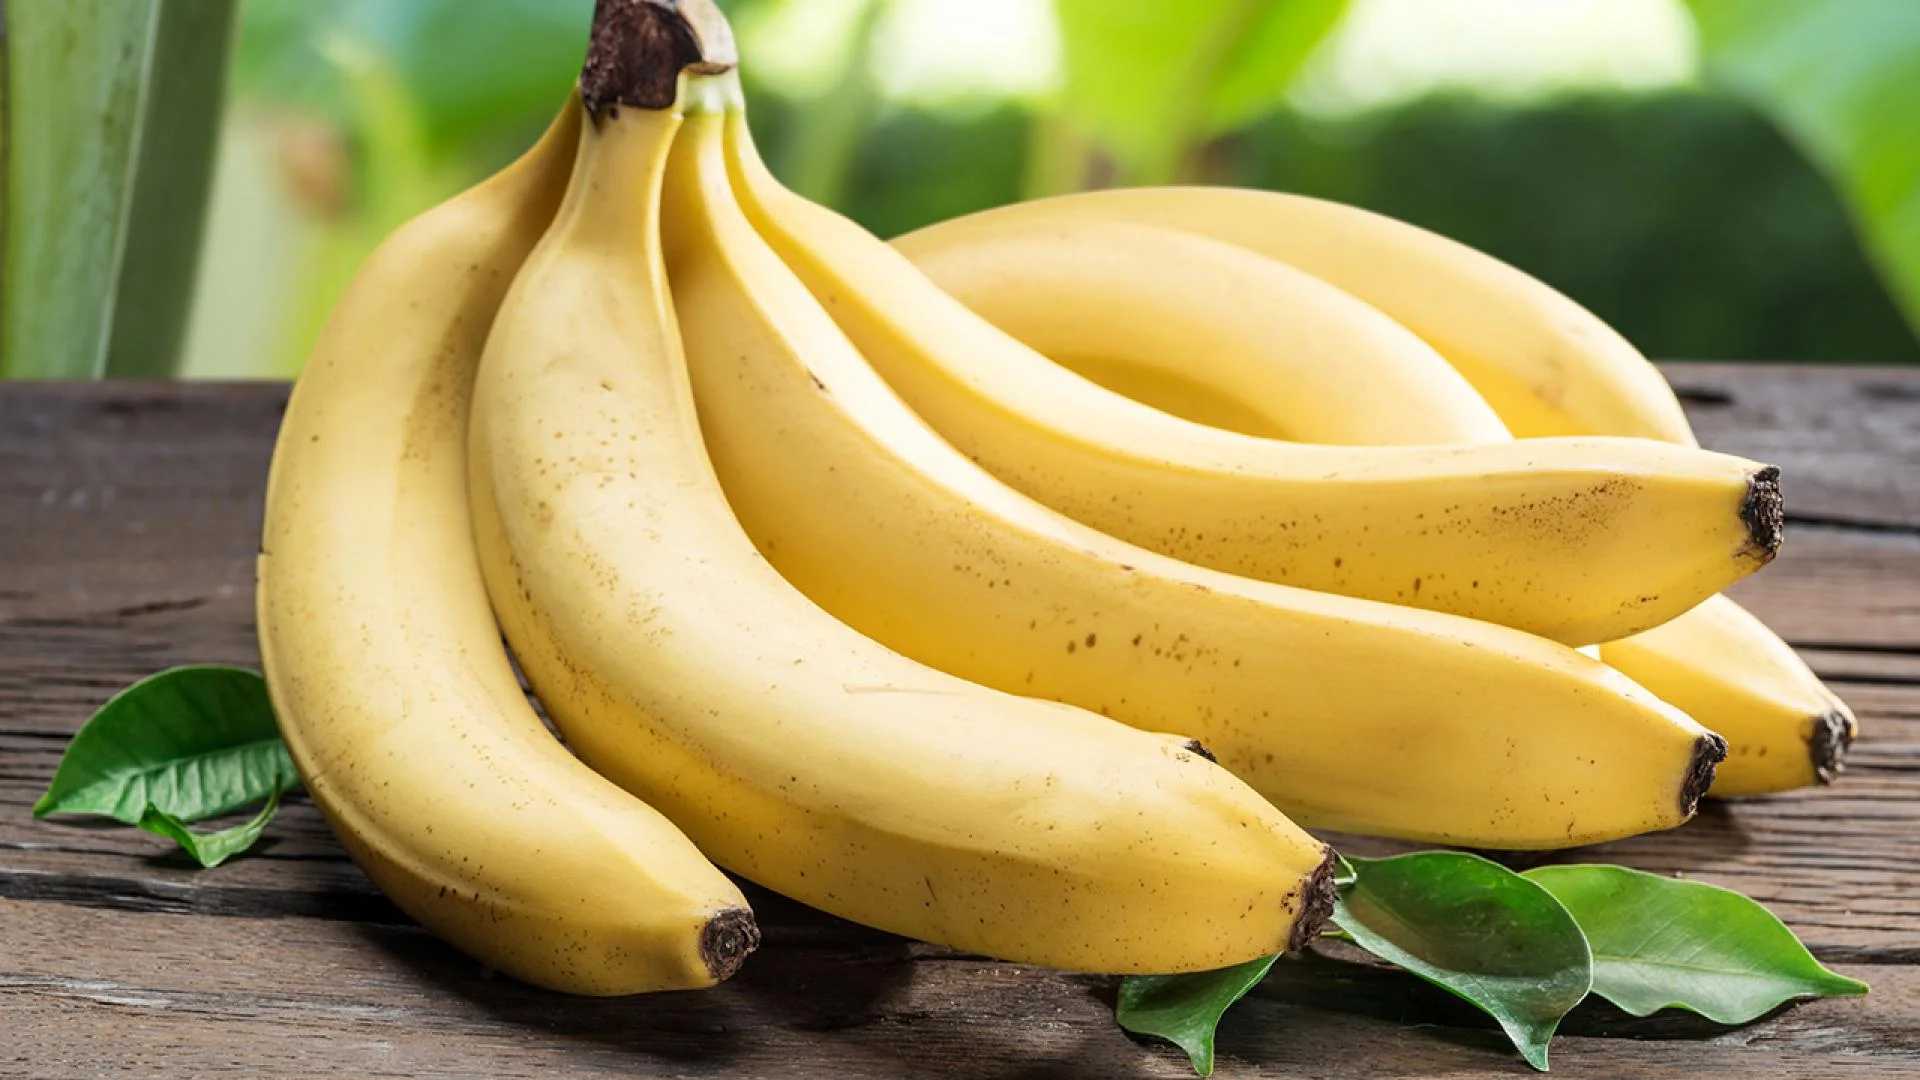 Ученые обнаружили, что запах бананов вызывает стрессовую реакцию у самцов мышей